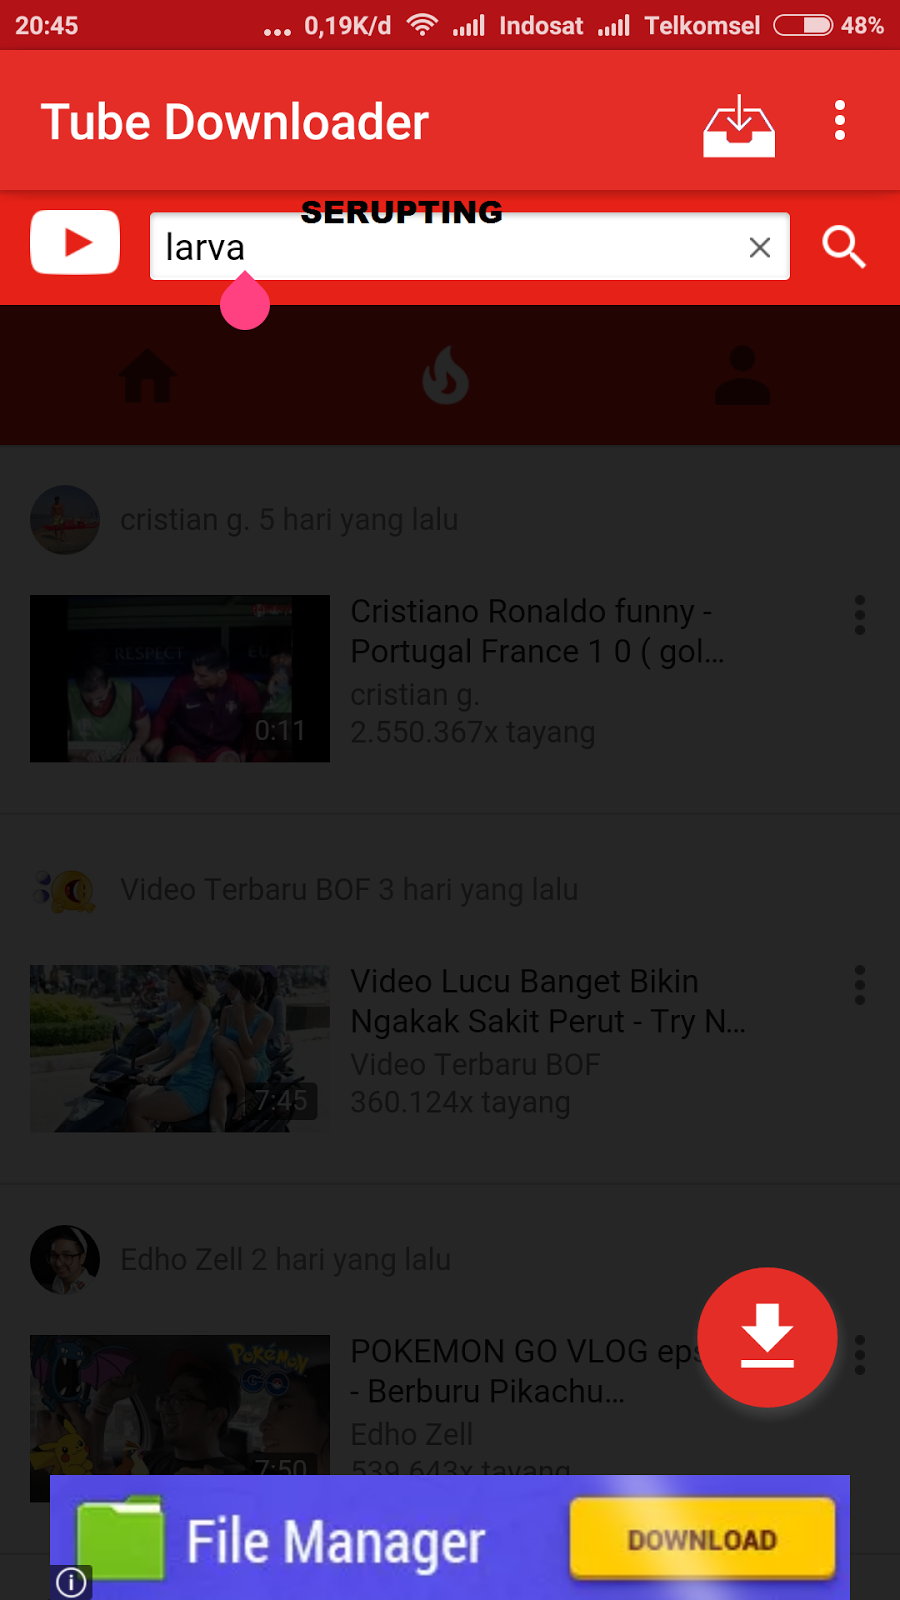 Unduh Youtube Dari Android Explorer Cara Mudah Downuup